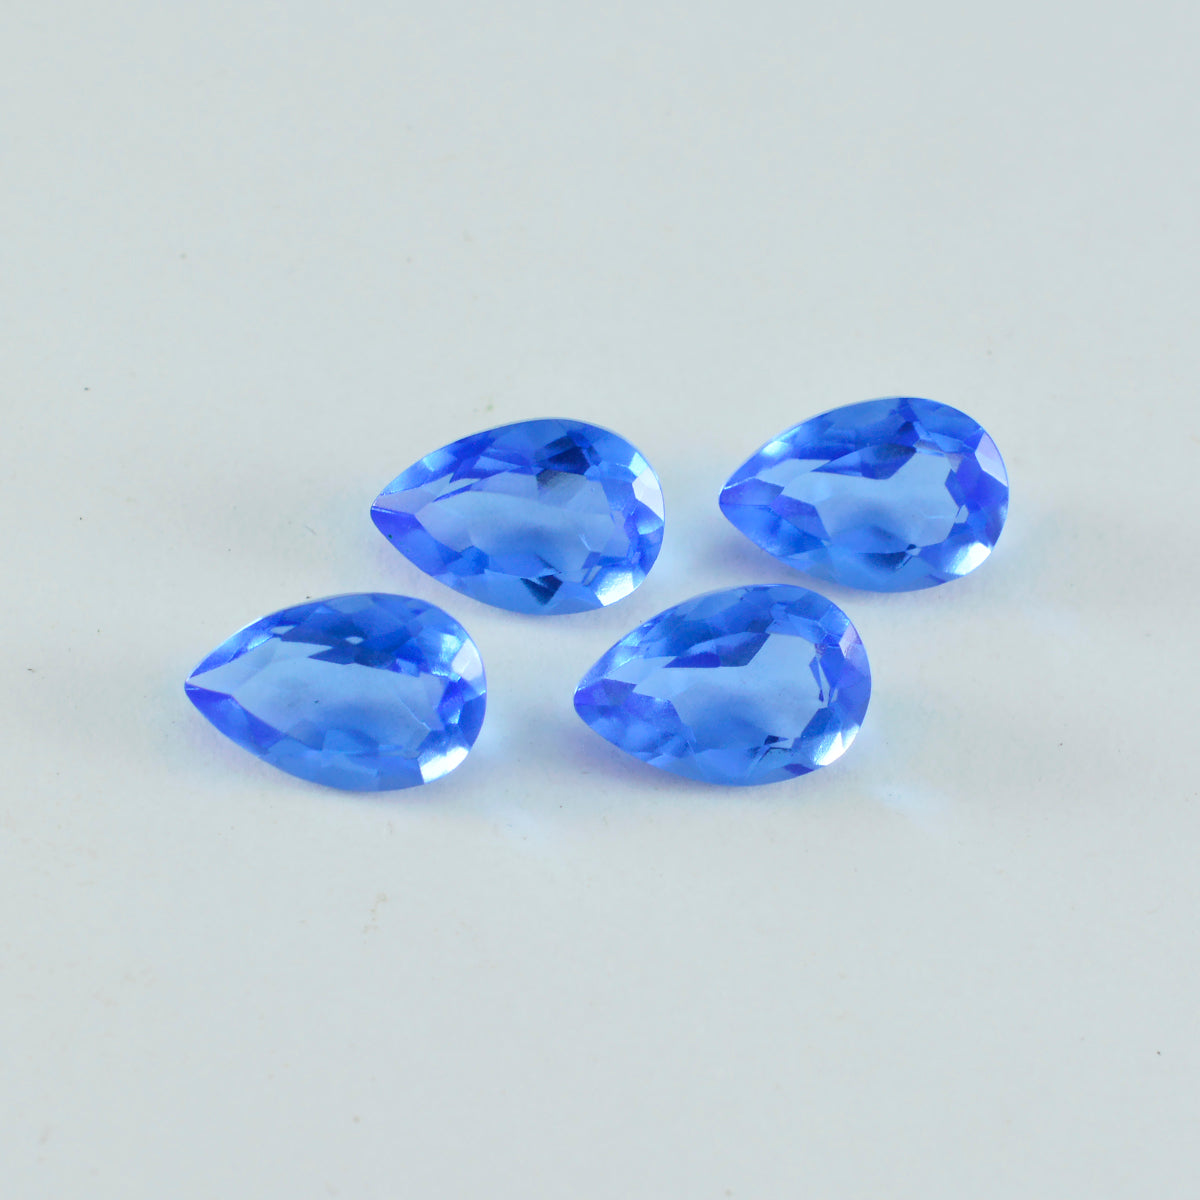 riyogems 1 шт. синий сапфир с цирконием граненый 8x12 мм грушевидной формы, драгоценный камень удивительного качества